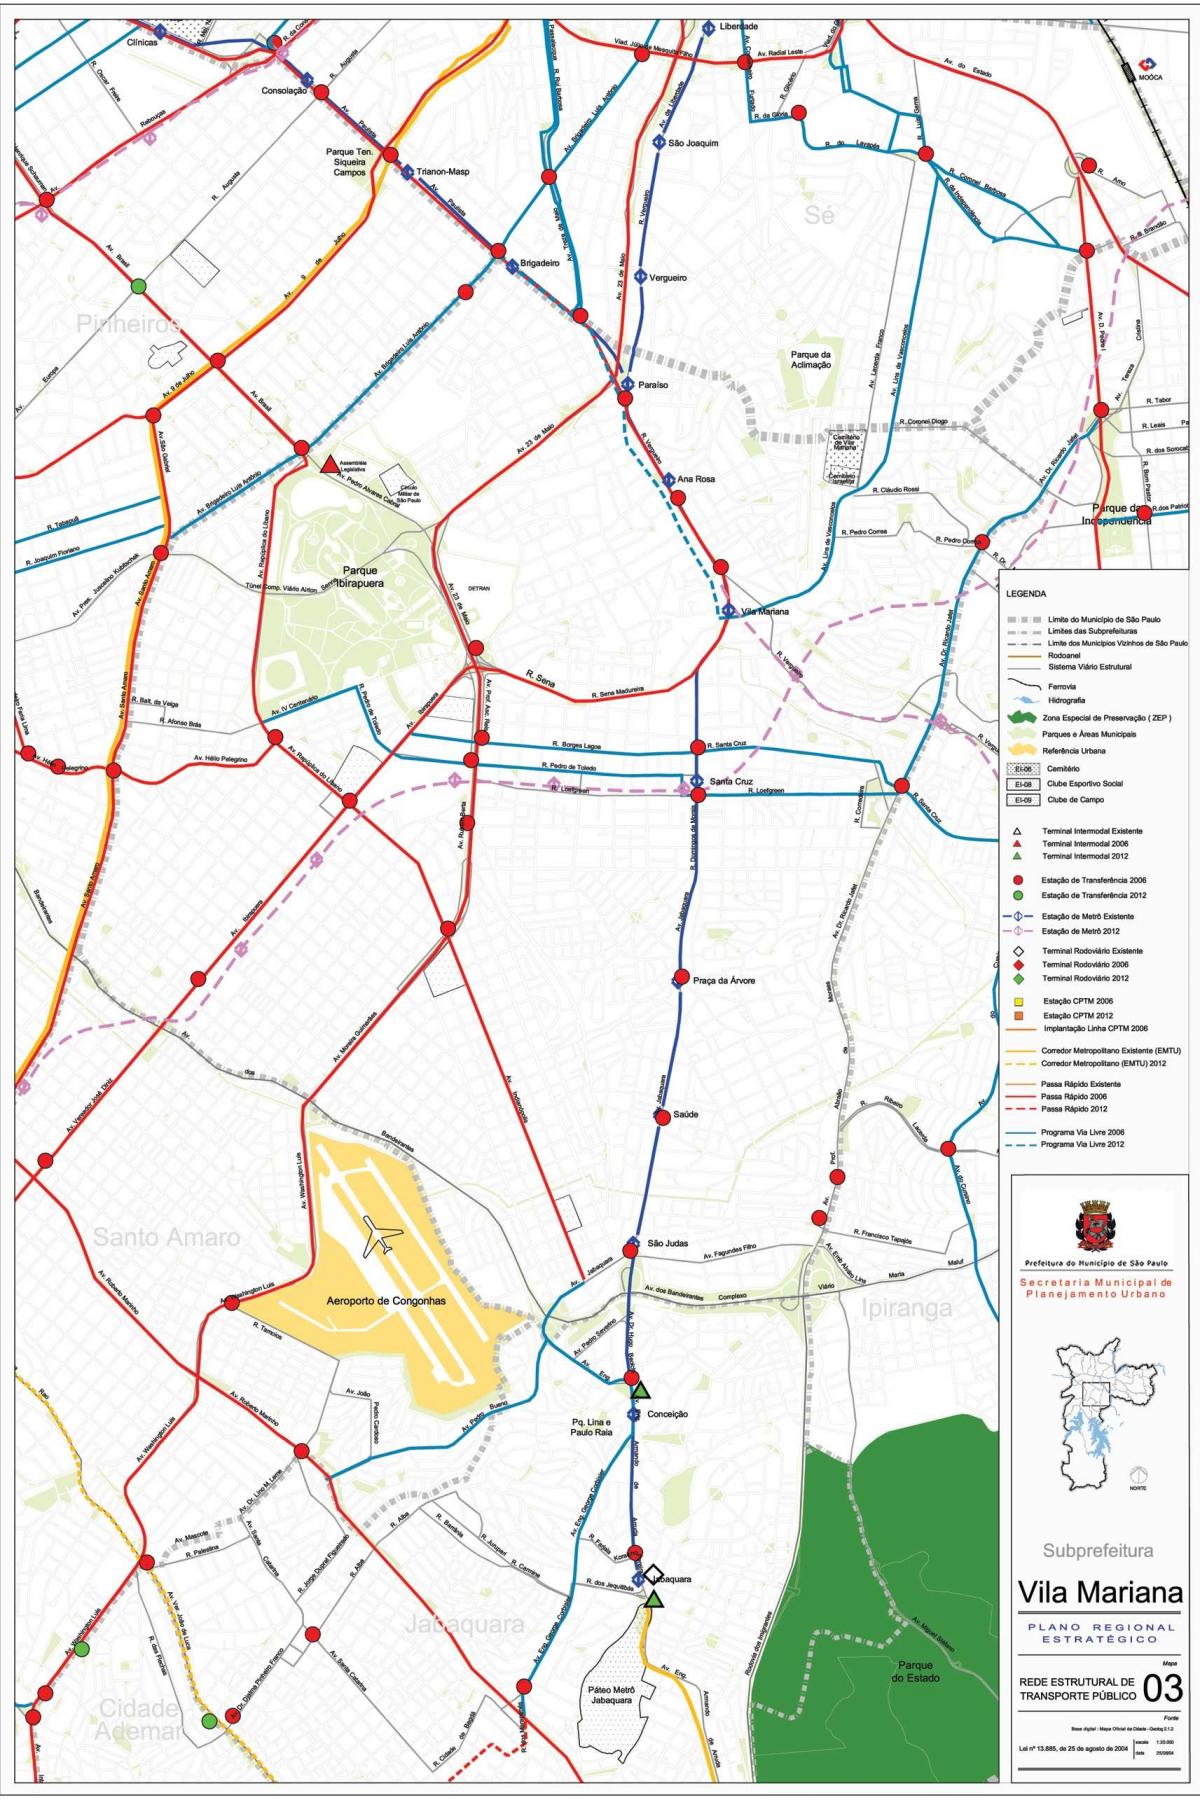 Mapa Vila Mariana, São Paulo - Veřejné dopravě